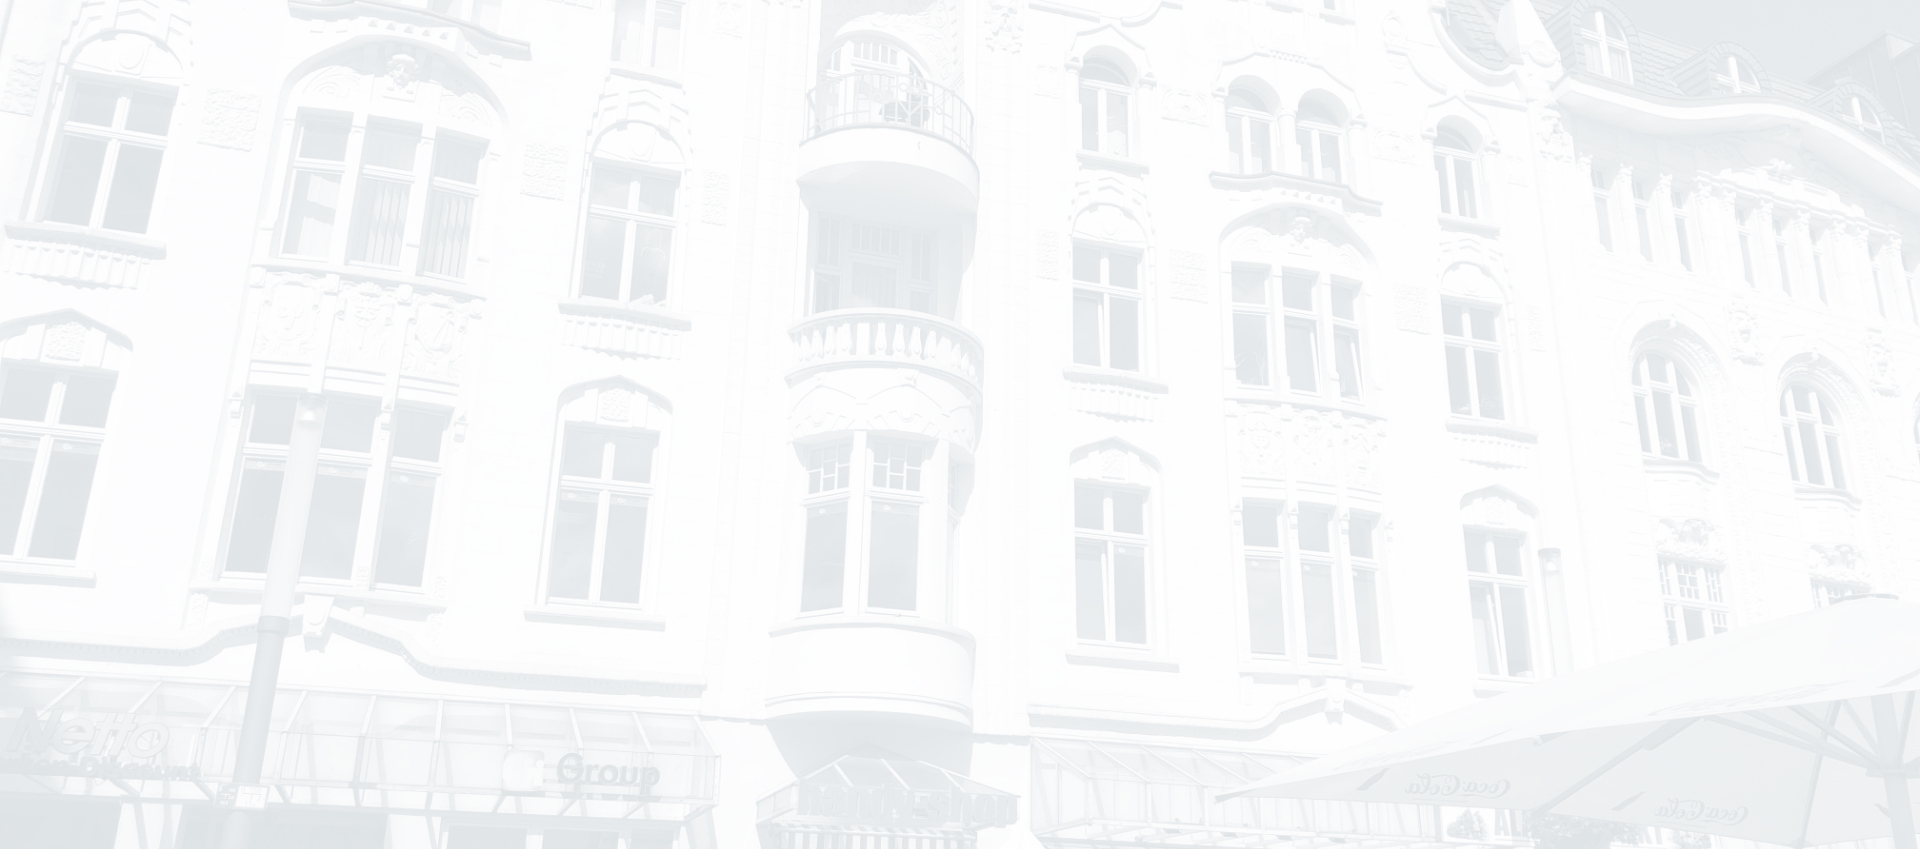 Das Hintergrundbild zeigt die Fassade eines schwarz-weiß gefärbten Wohn- und Geschäftshaus.